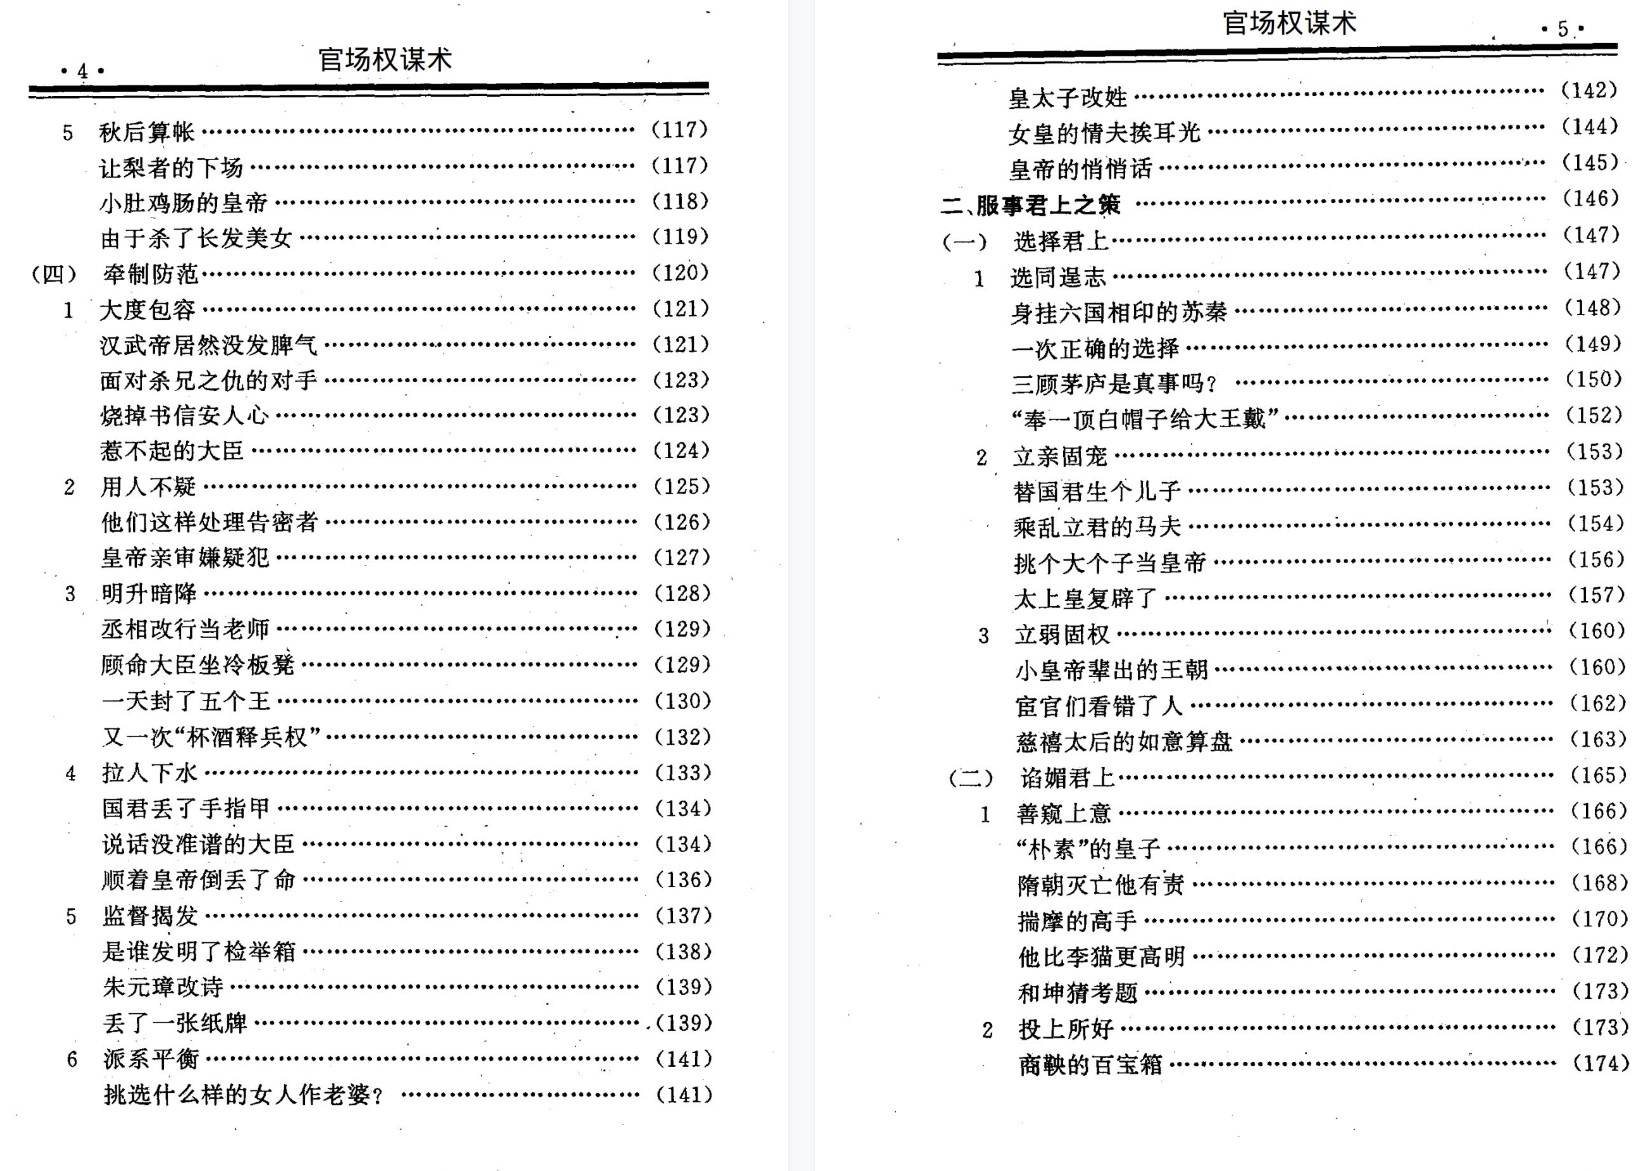 《官场权谋术》无水印「百度网盘下载」PDF 电子书插图3